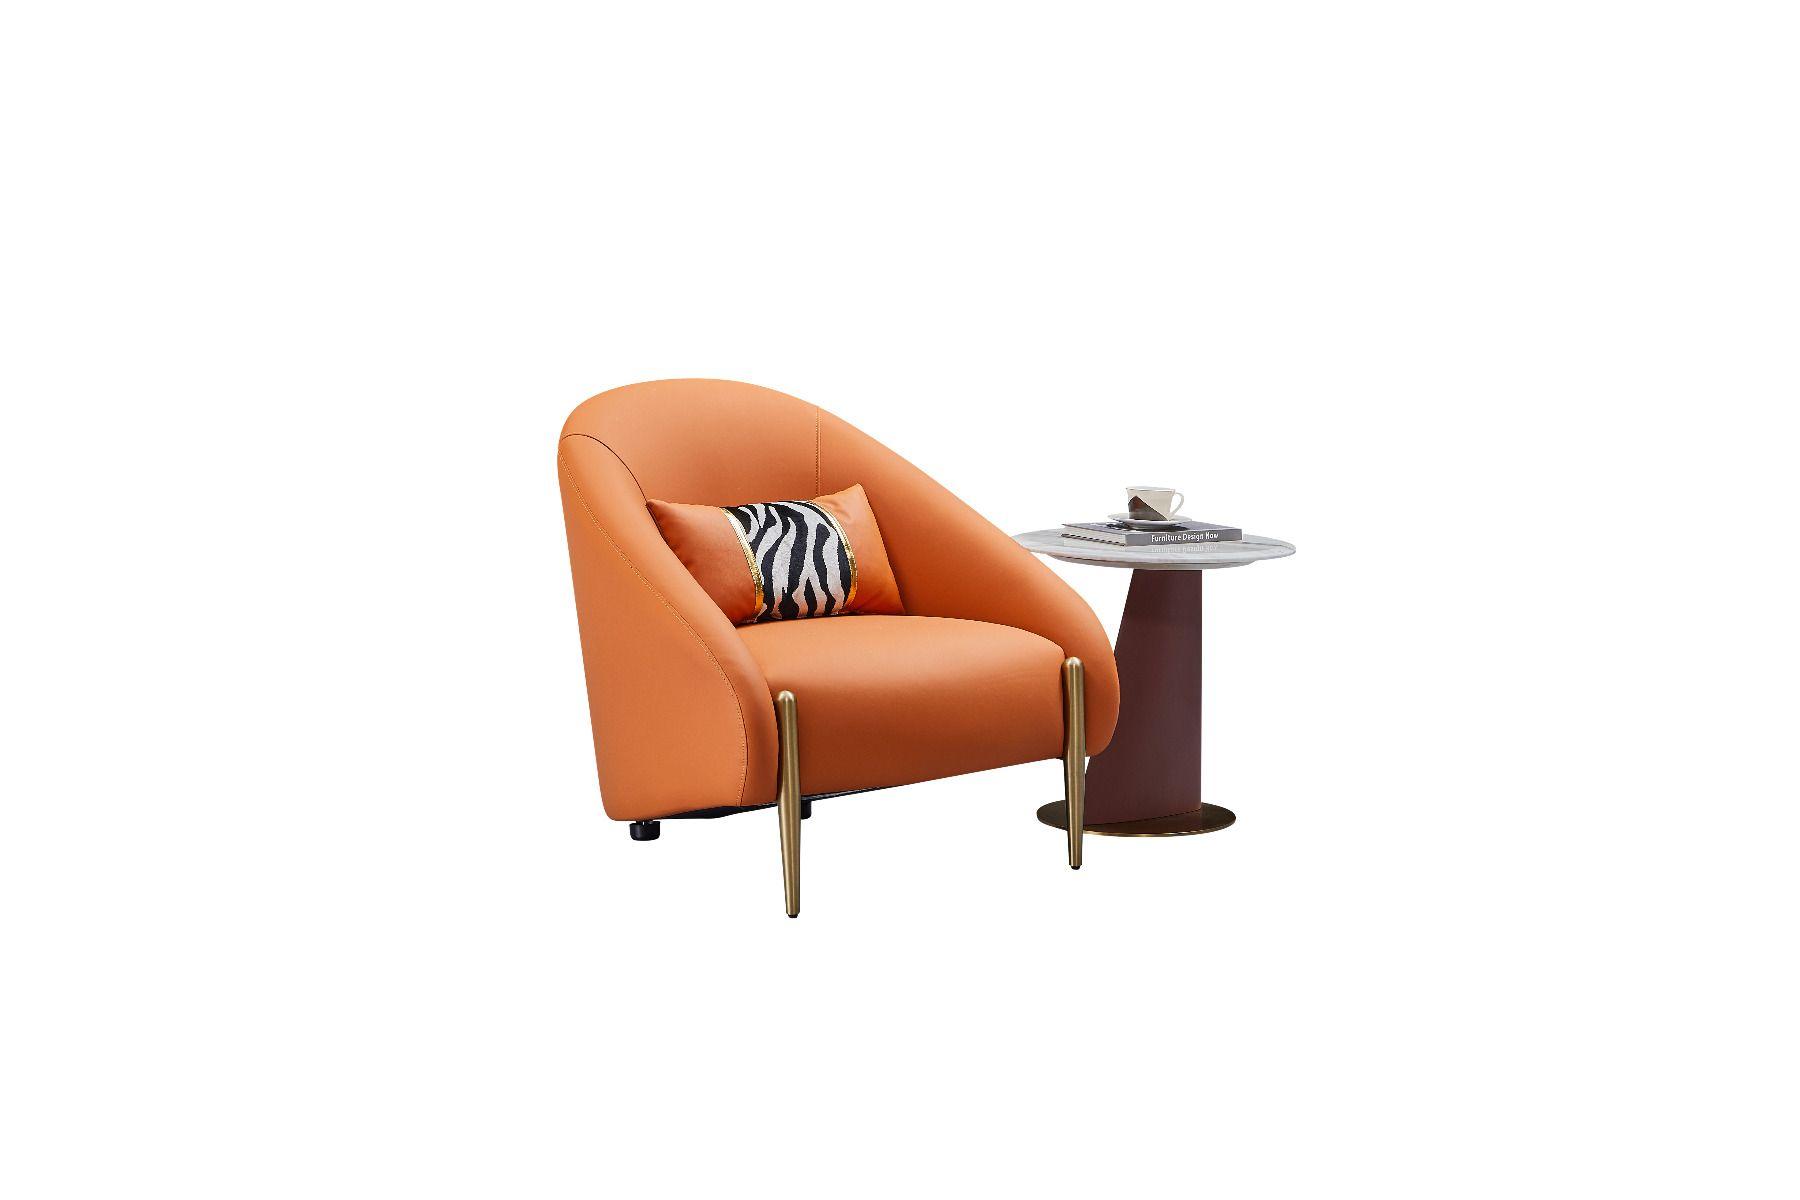 Contemporary, Modern Accent Chair EK-Y1012-ORG EK-Y1012-ORG in Orange Genuine Leather